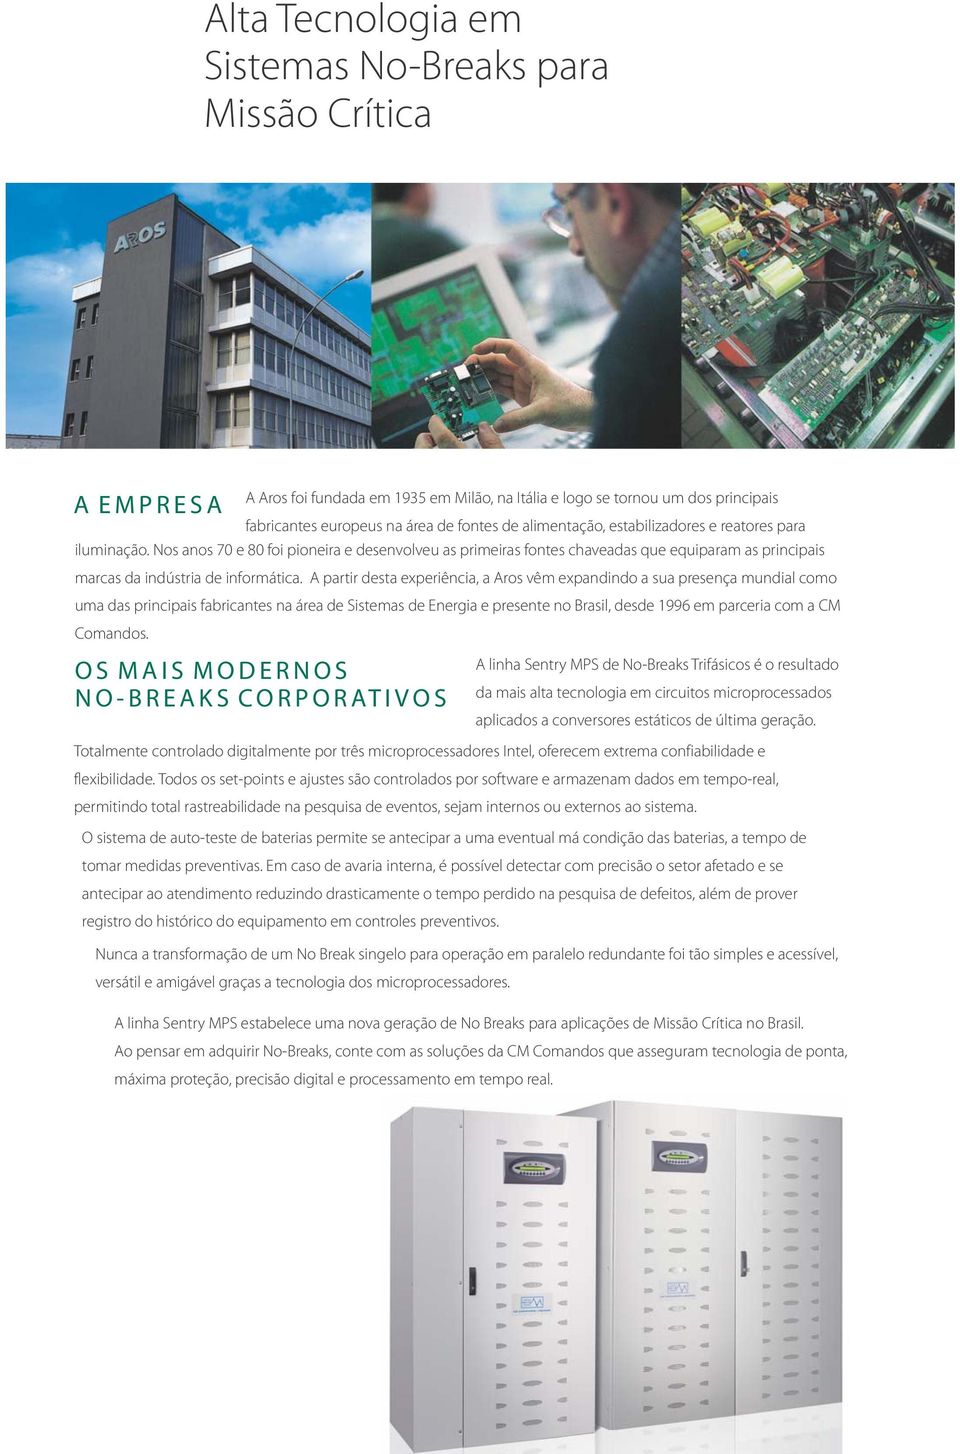 A partir desta experiência, a Aros vêm expandindo a sua presença mundial como uma das principais fabricantes na área de Sistemas de Energia e presente no Brasil, desde 1996 em parceria com a CM